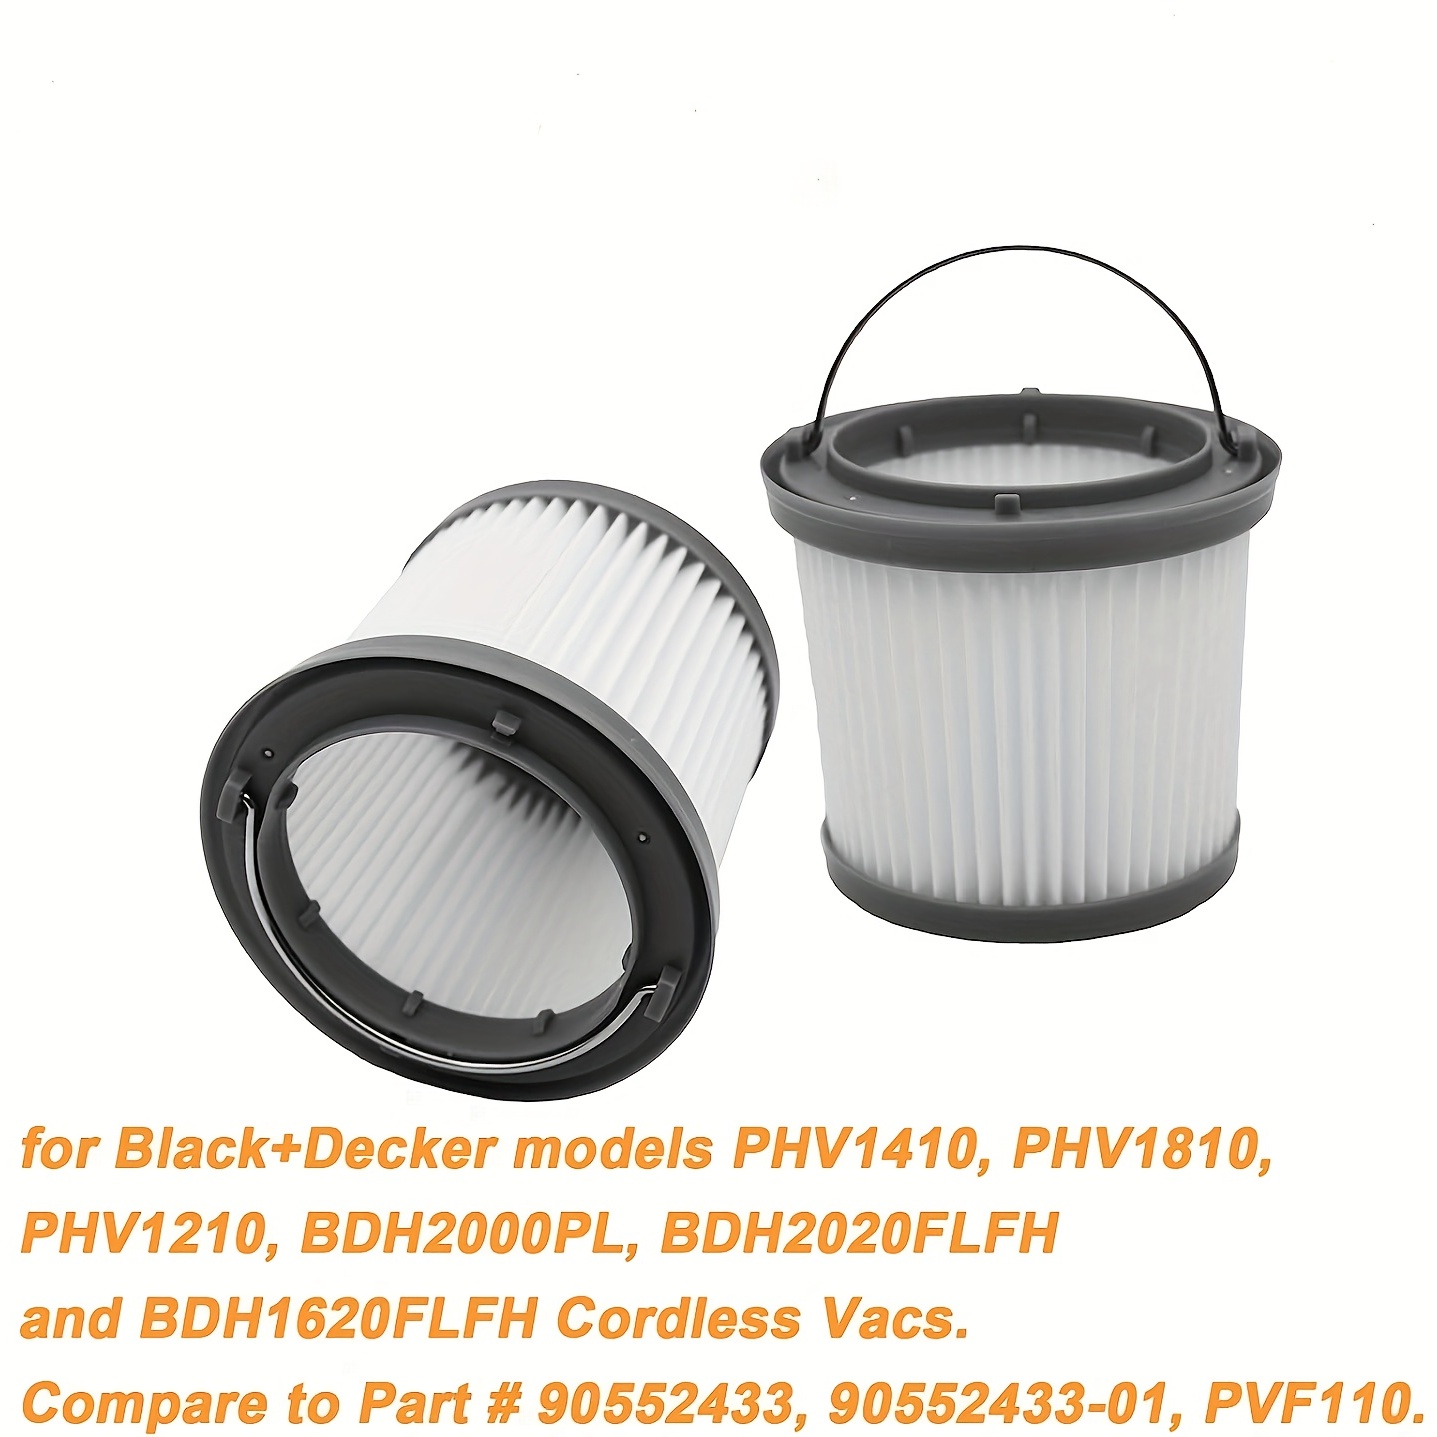 Black & Decker Pivot BDH2000PL Handheld Vacuum Review